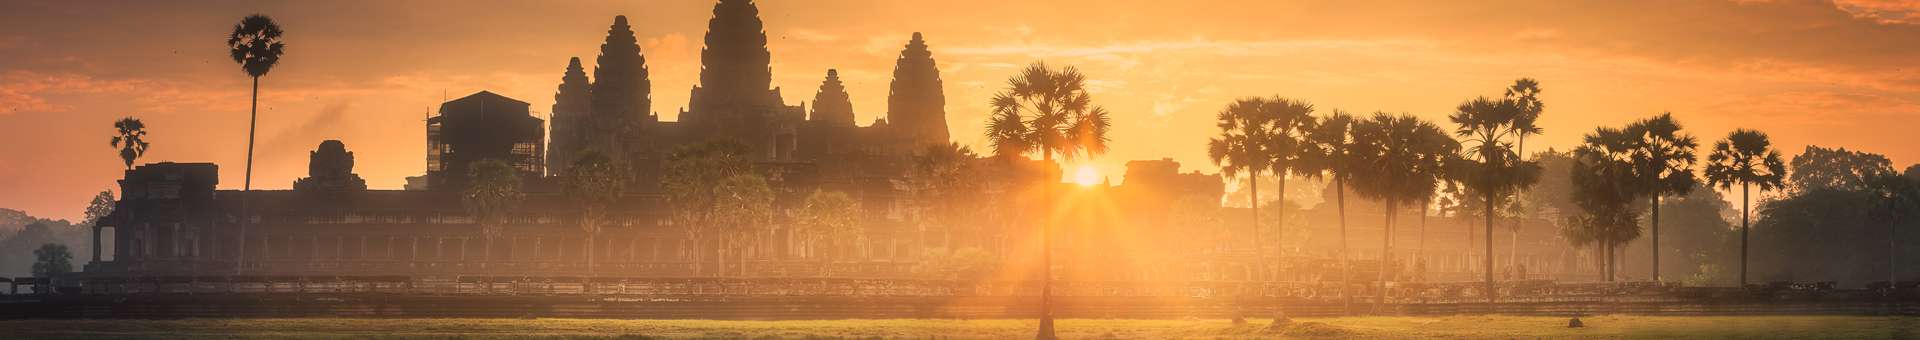 Búsqueda de información Whois de nombres de dominios en Camboya